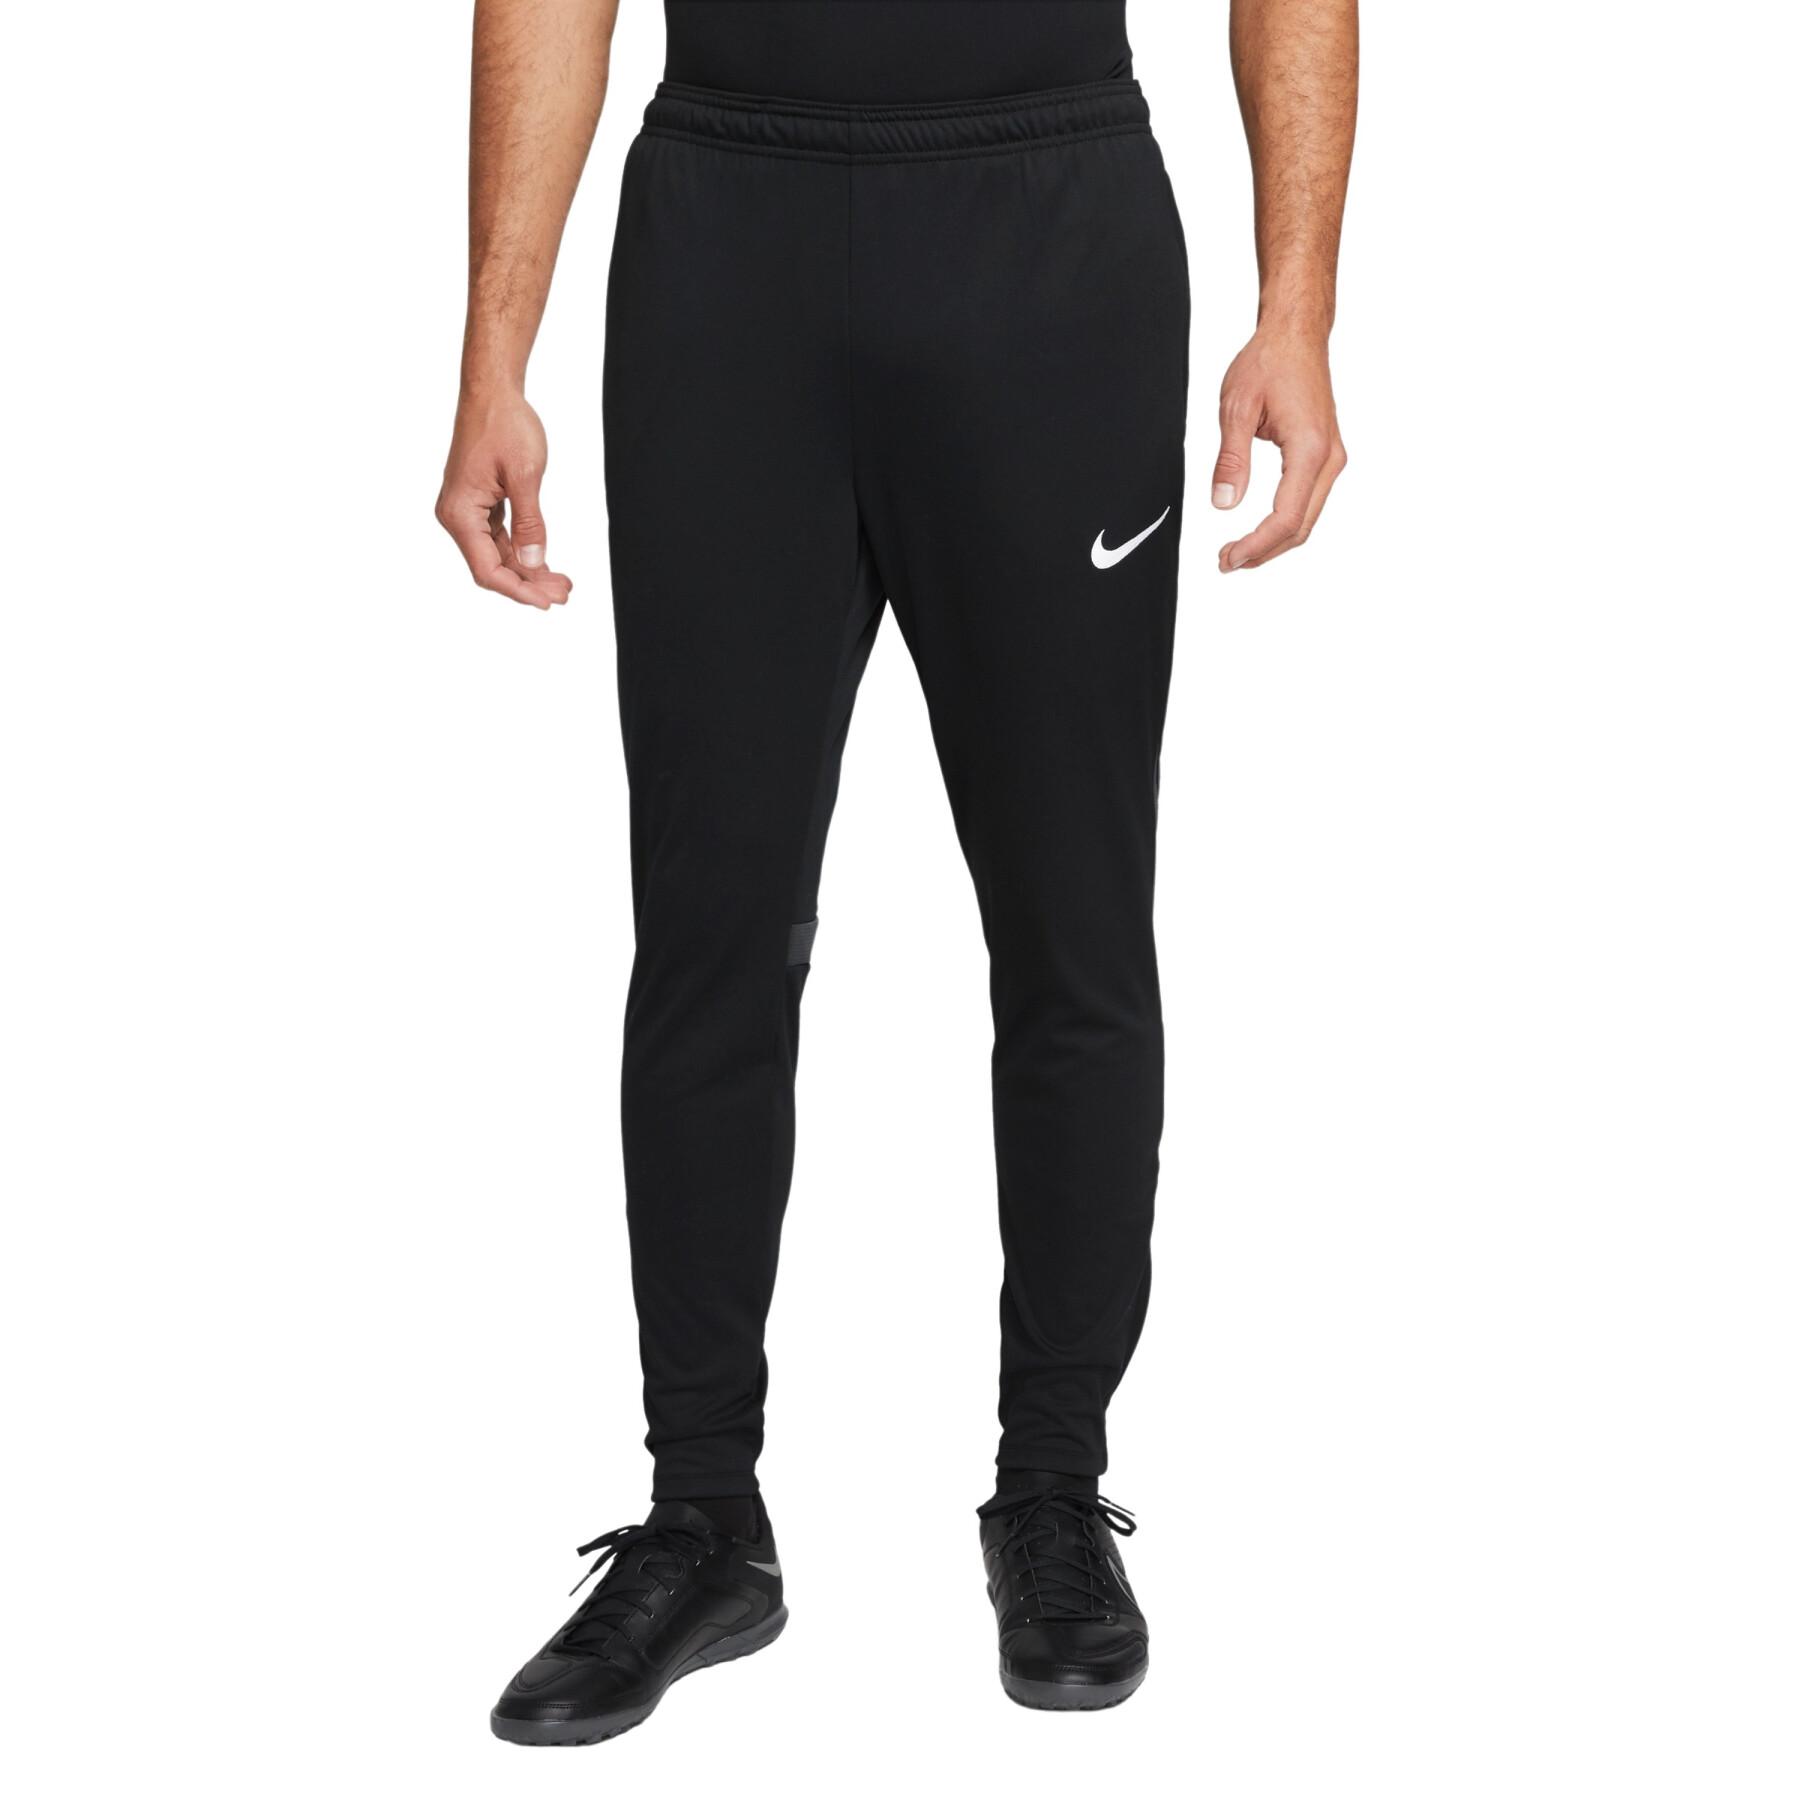 Pantalon Nike Yoga Noir - Espace Foot